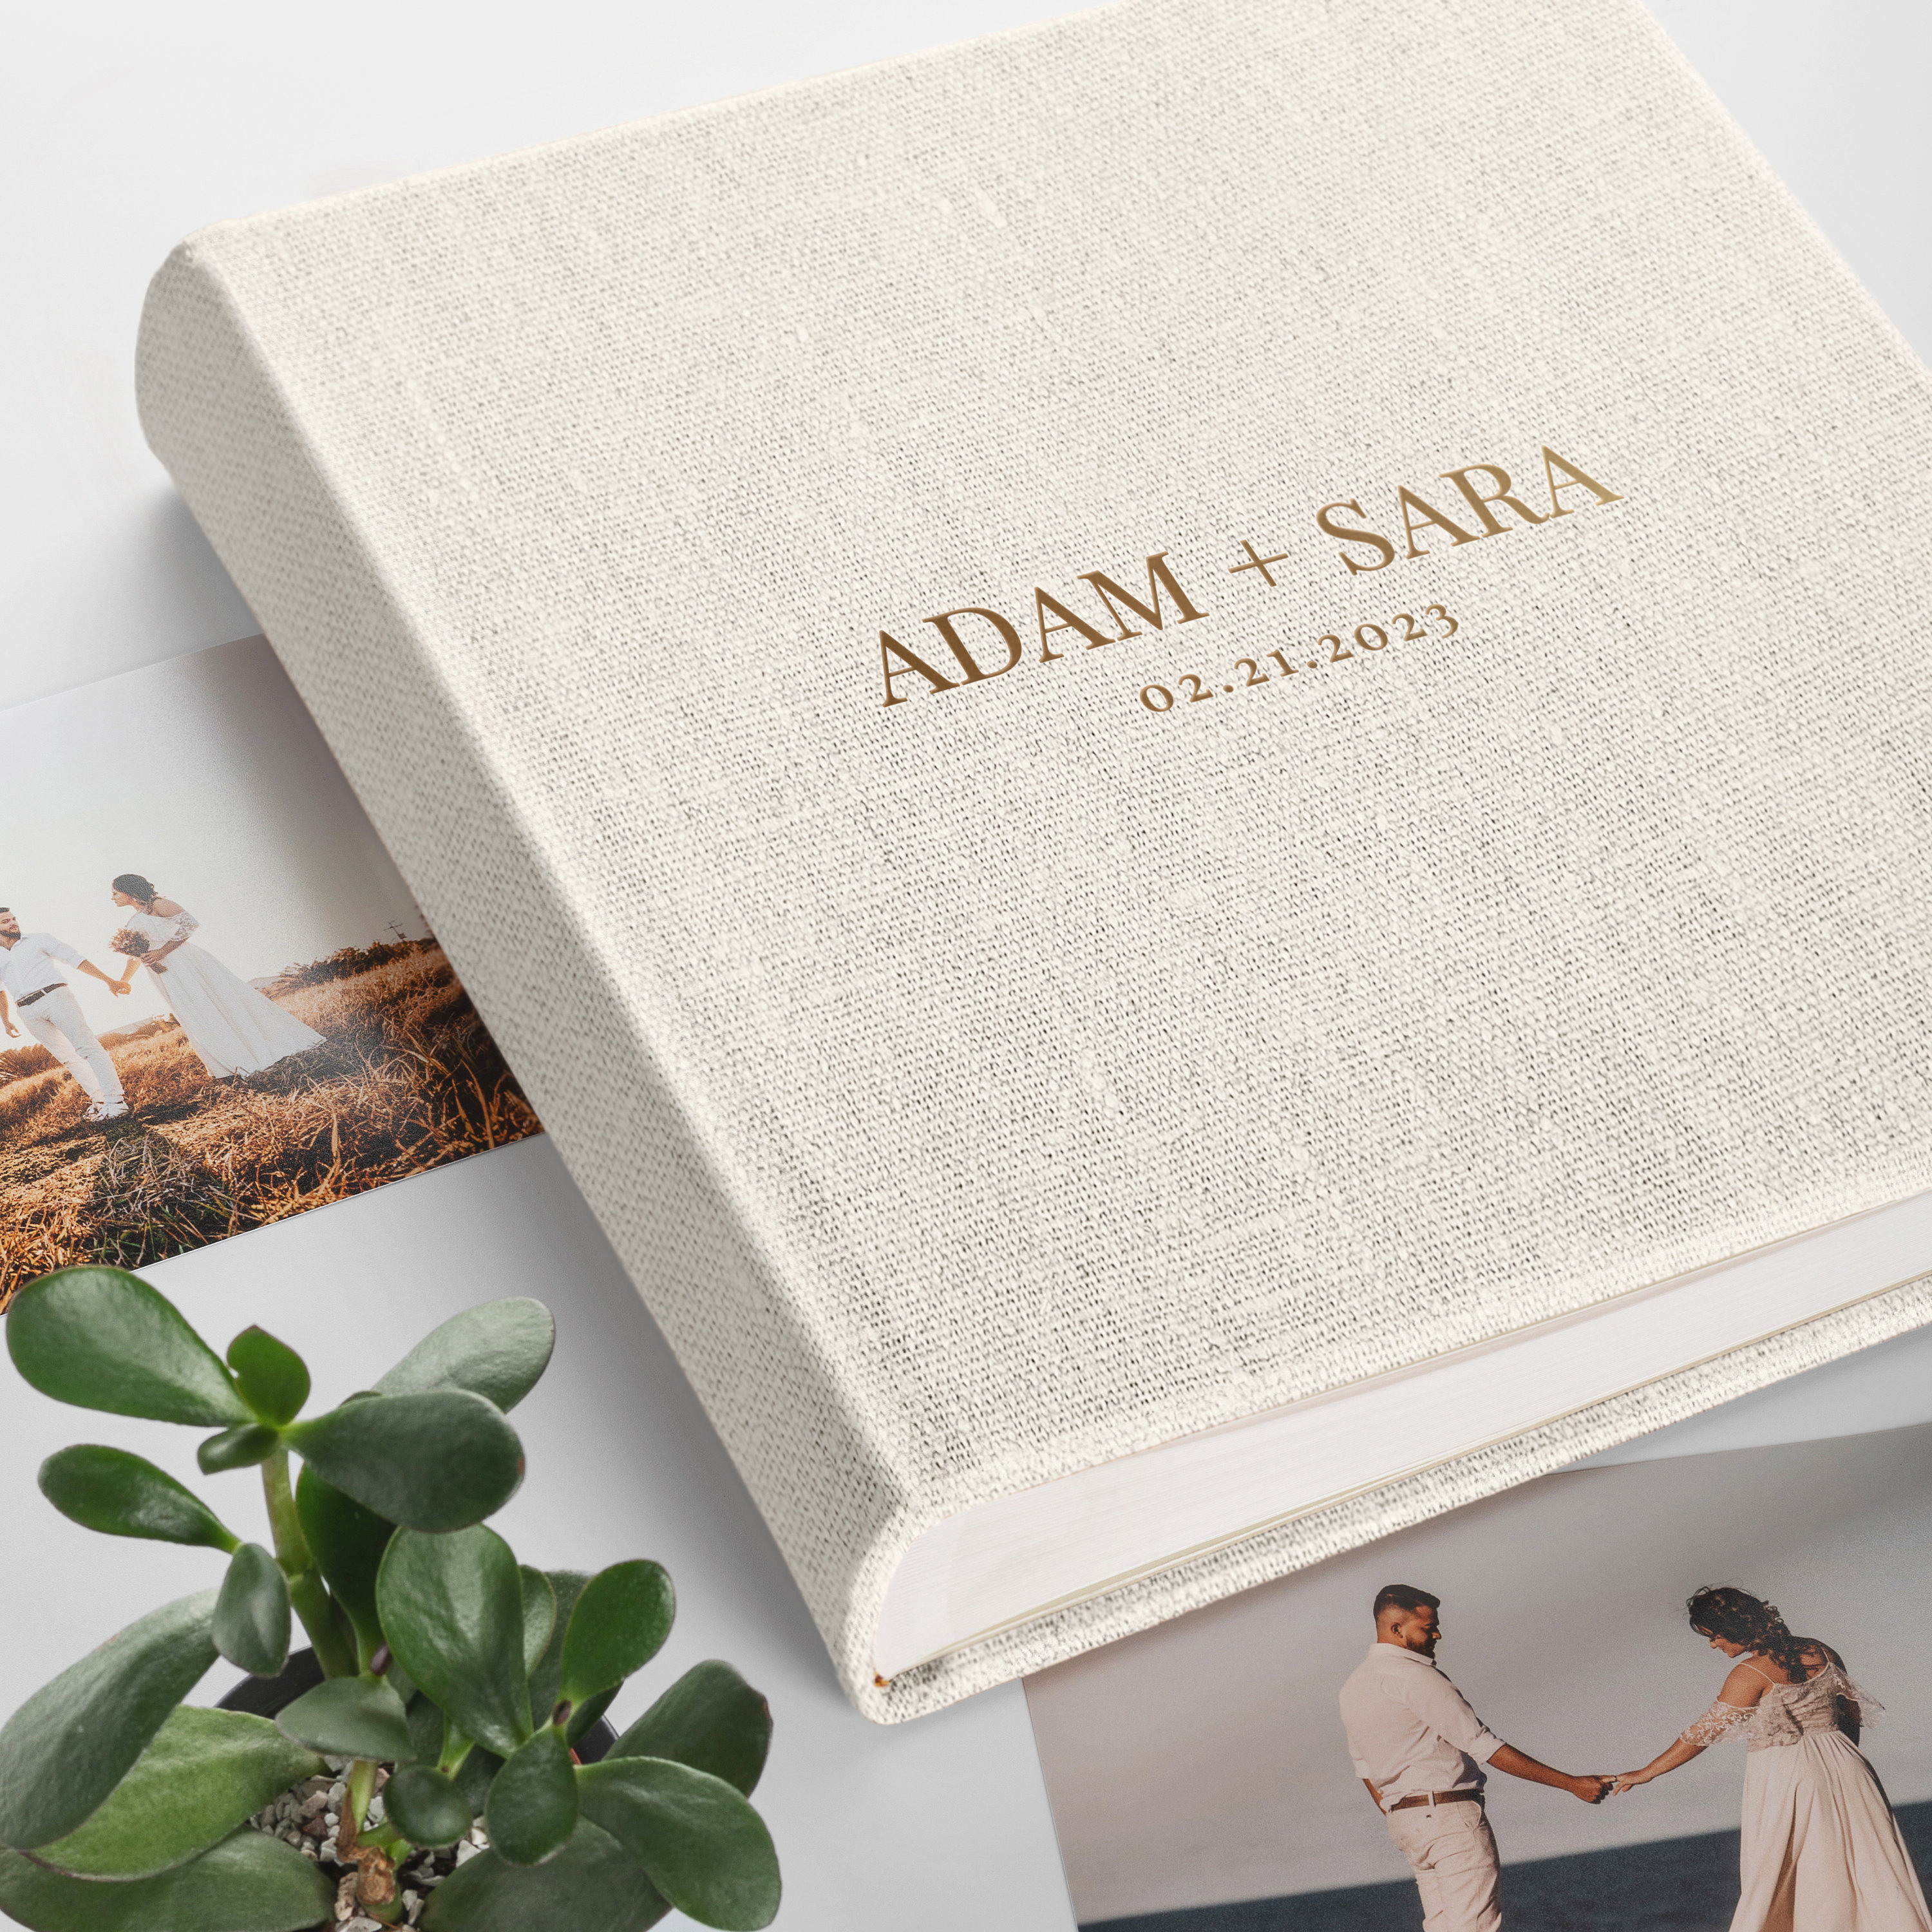 Large Wedding Photo Album, Velvet Self-adhesive Album, Family Photo Album,  Travel Book, Anniversary Scrapbook Album Hand Made in Europe 